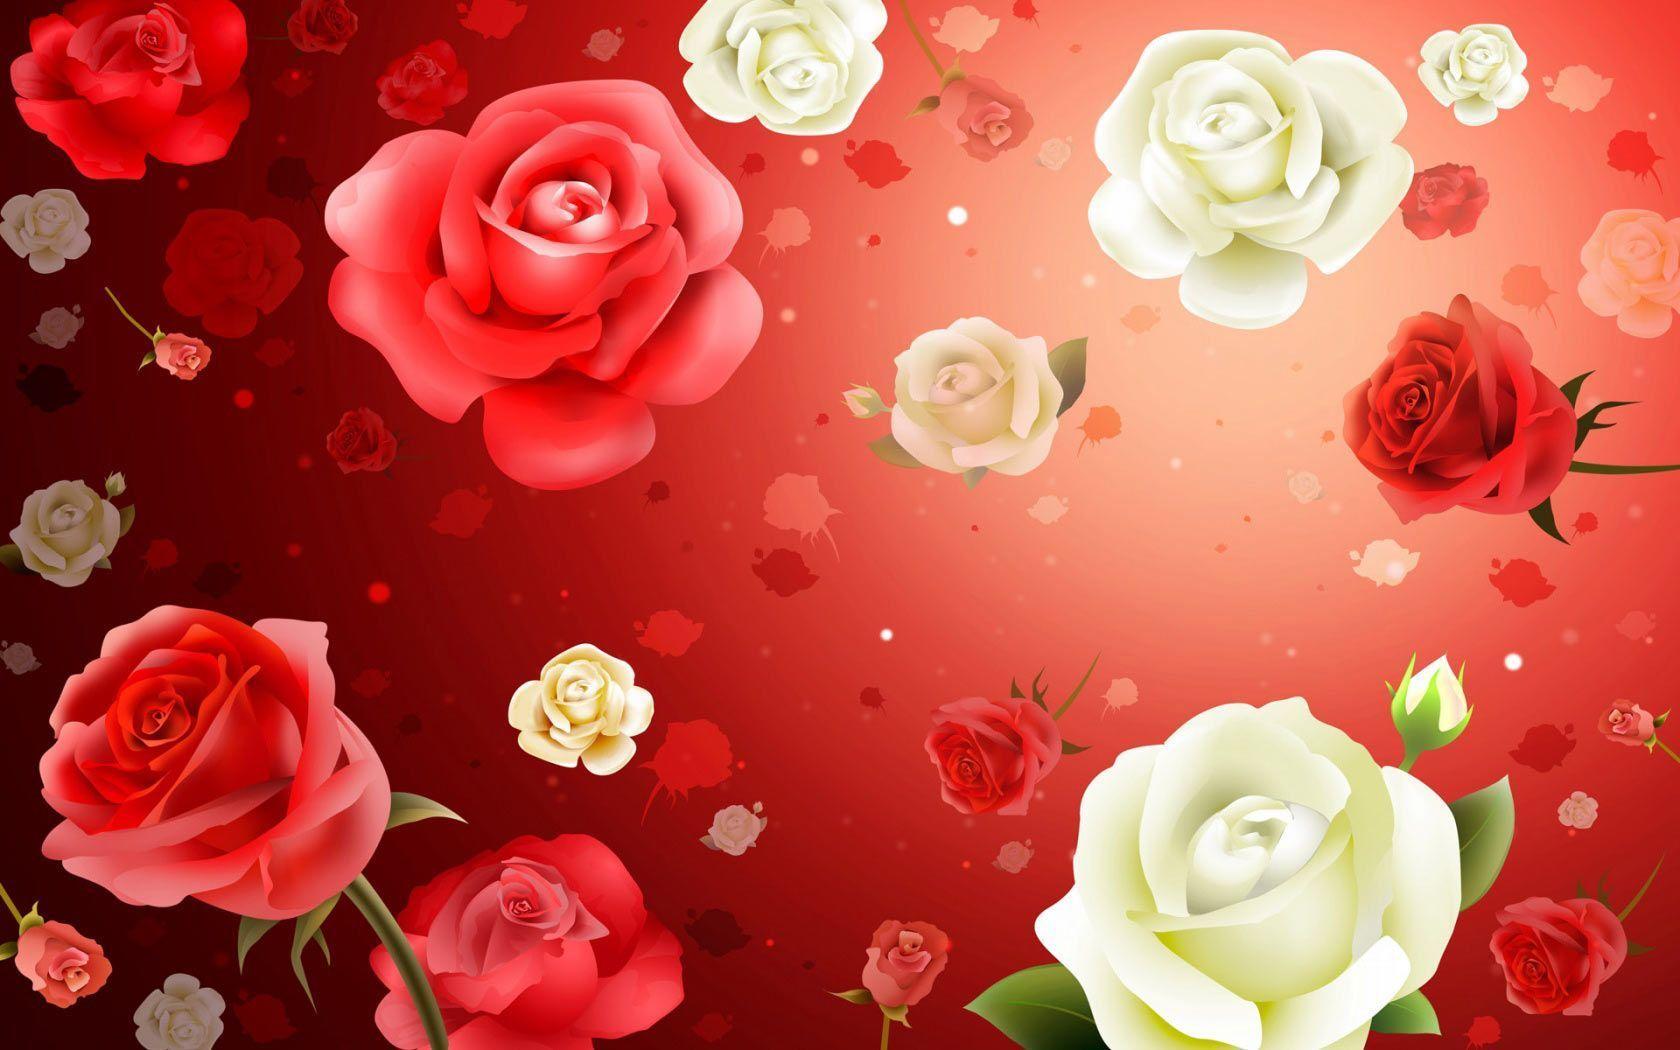 Rose Flower Wallpaper For Desktop Background Wallpaper